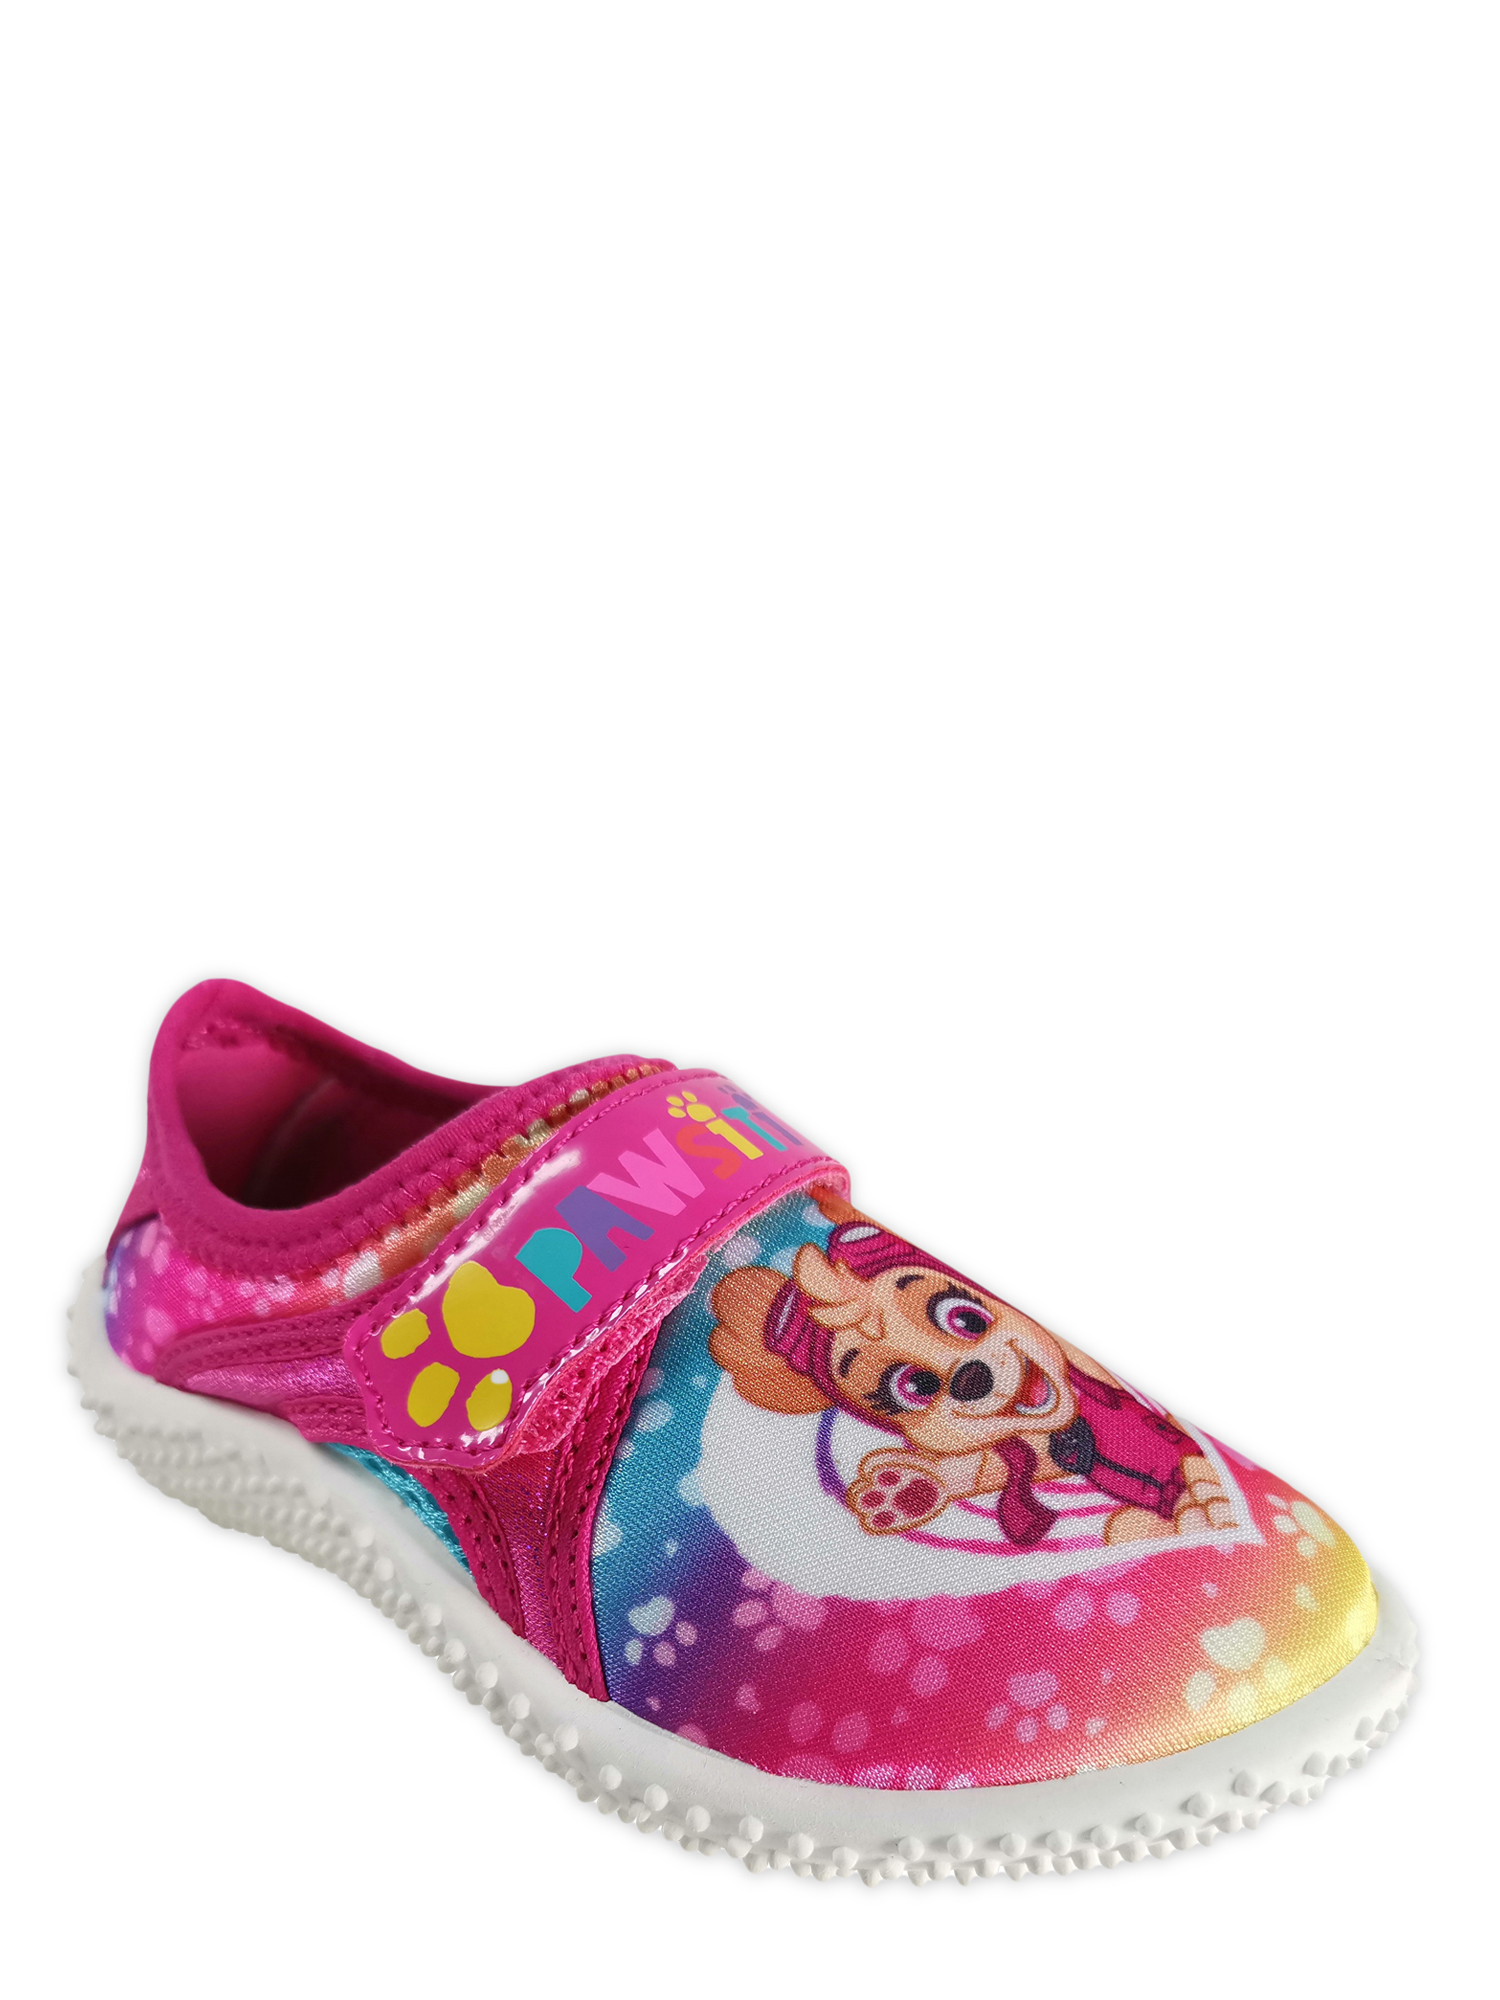 Nickelodeon Paw Patrol Summer Fun Beach Water Shoe (Toddler Girls) - image 1 of 6